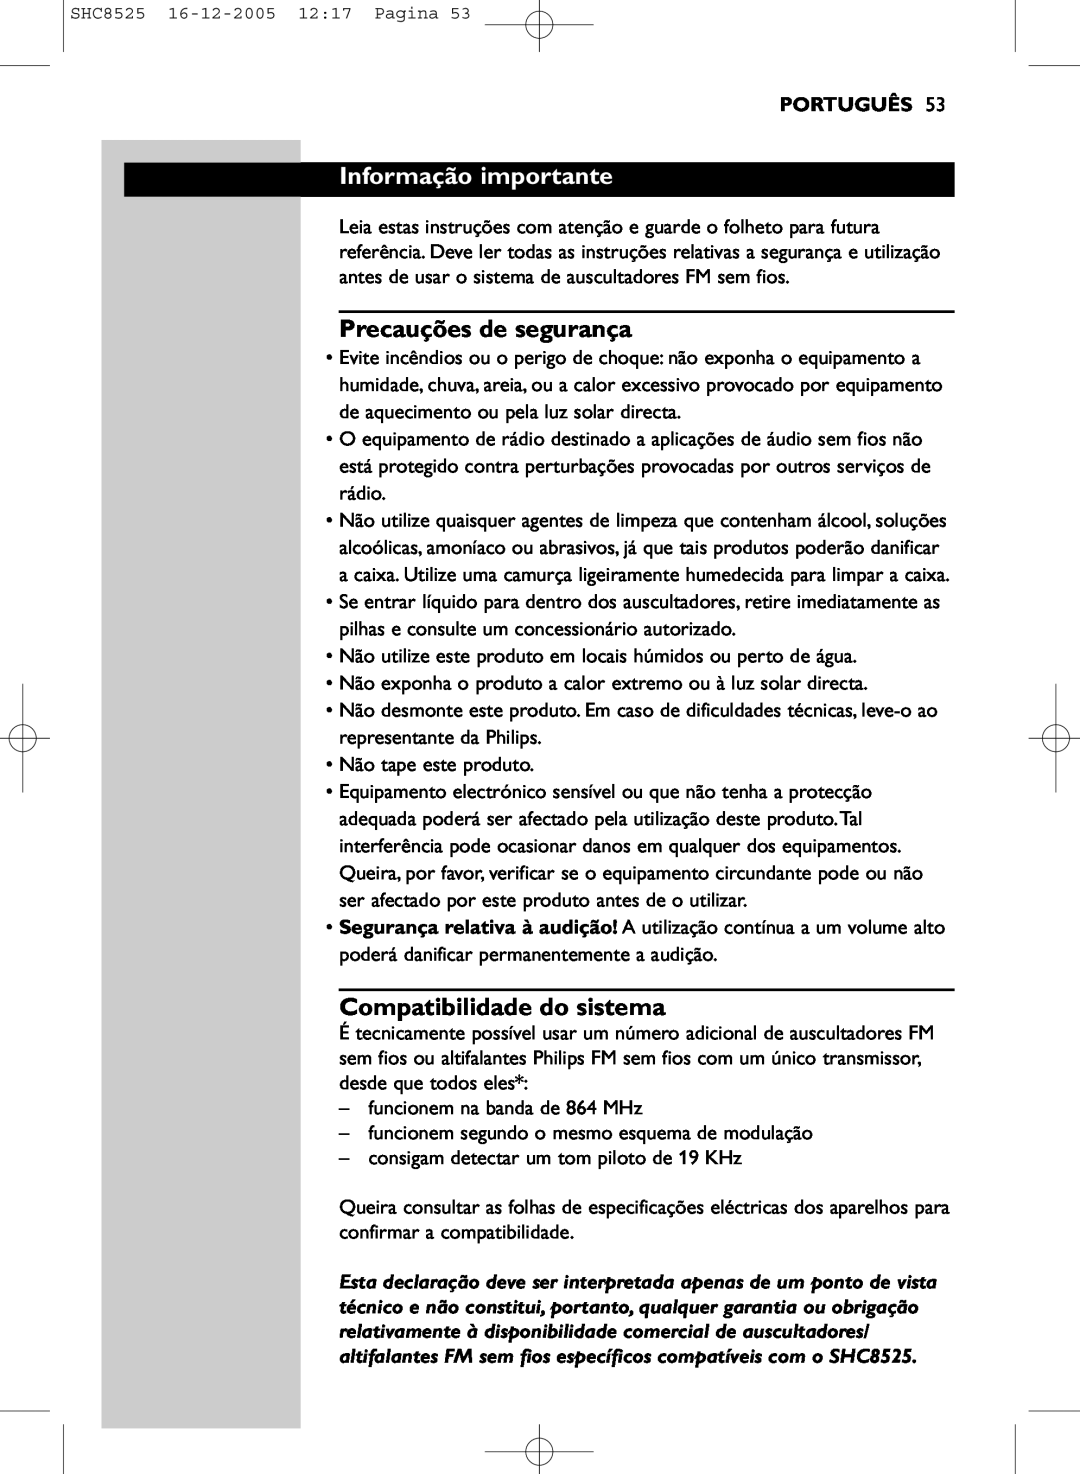 Event electronic SHC8525 manual Informação importante, Precauções de segurança, Compatibilidade do sistema, Português 